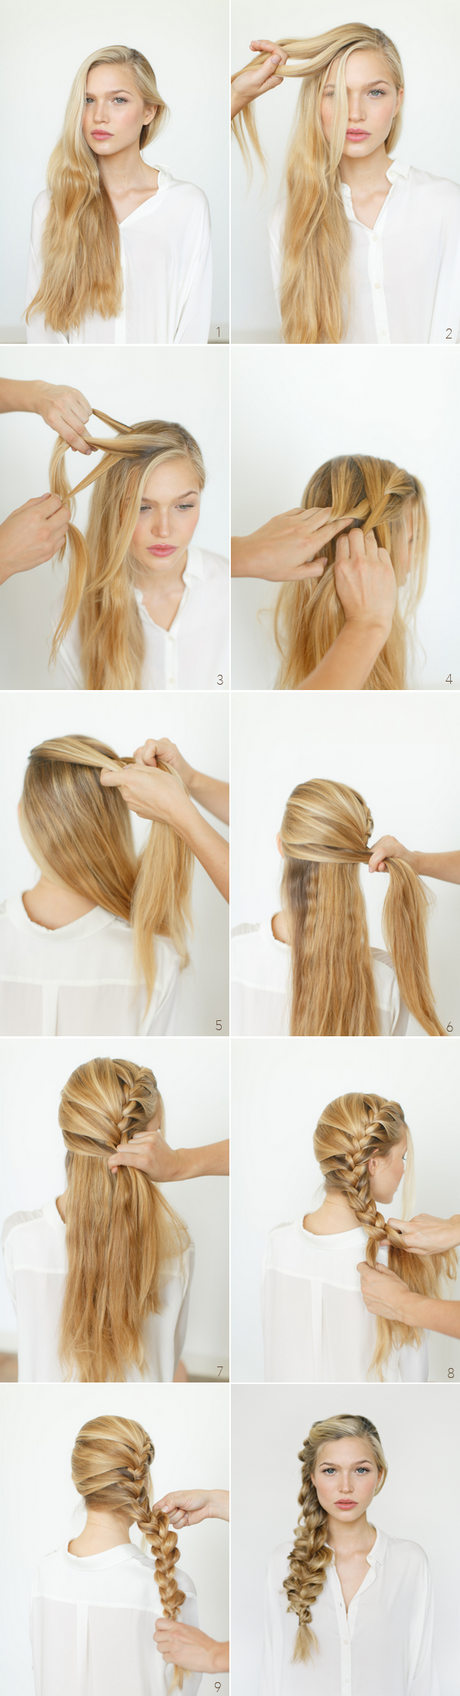 Braid hairstyles tutorials braid-hairstyles-tutorials-84_2